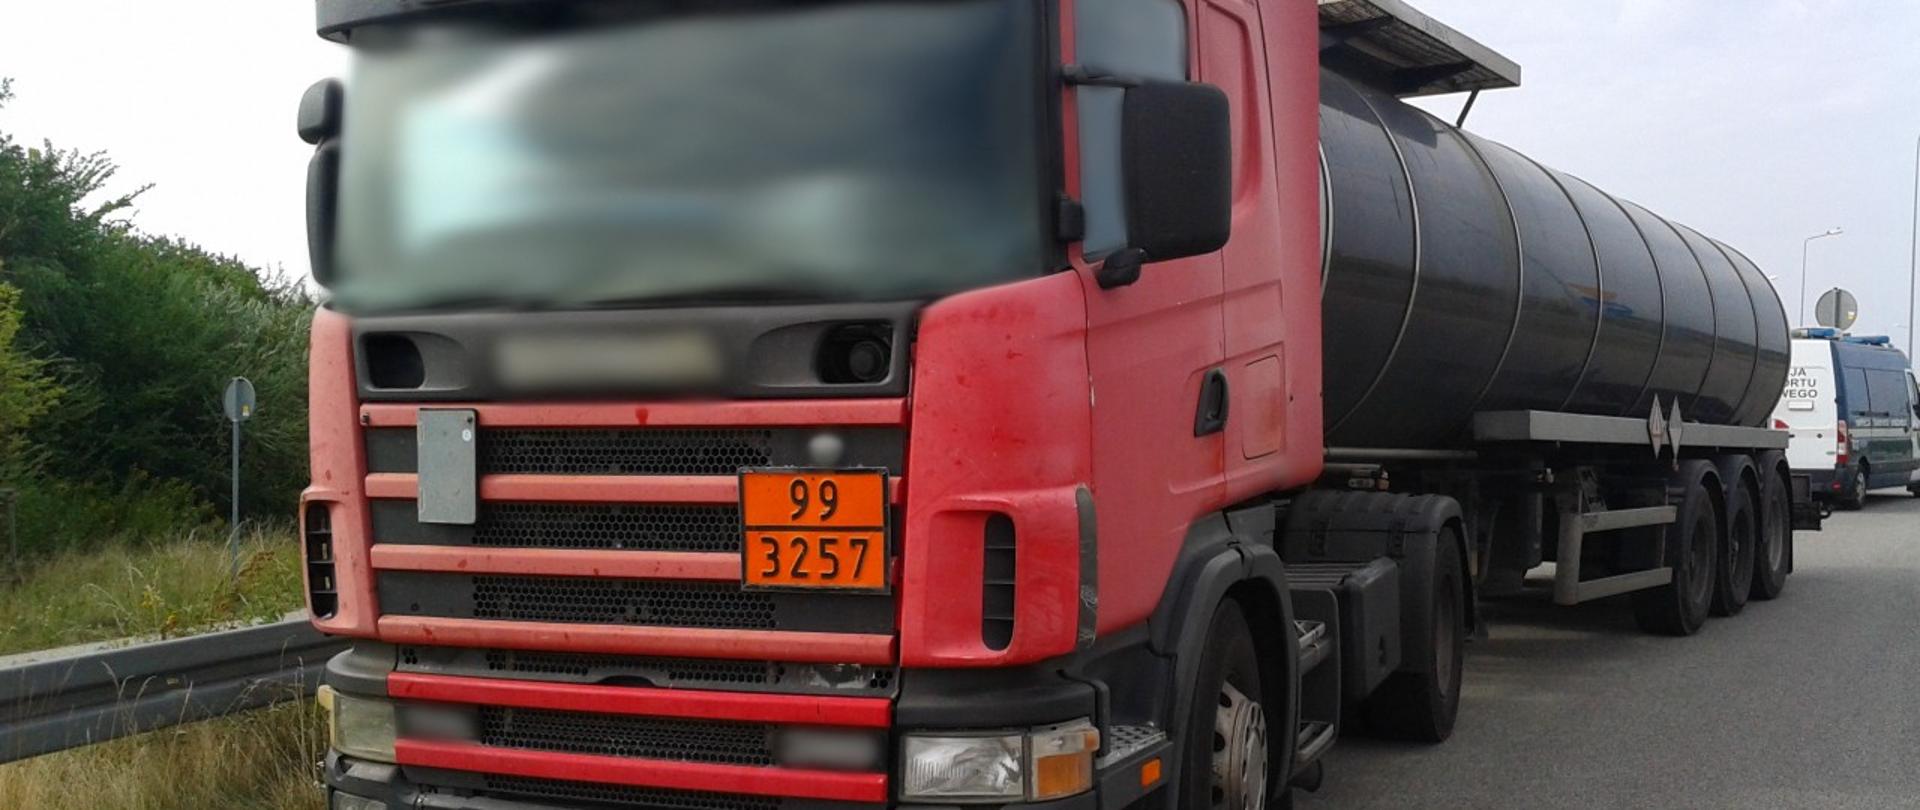 Na pierwszym planie: przód zatrzymanej do kontroli drogowej ciężarówki oznaczonej tablicą pomarańczowej barwy (ADR). Z tyłu zespołu pojazdów (ciągnika siodłowego z naczepą) stoi oznakowany furgon mazowieckiej ITD.